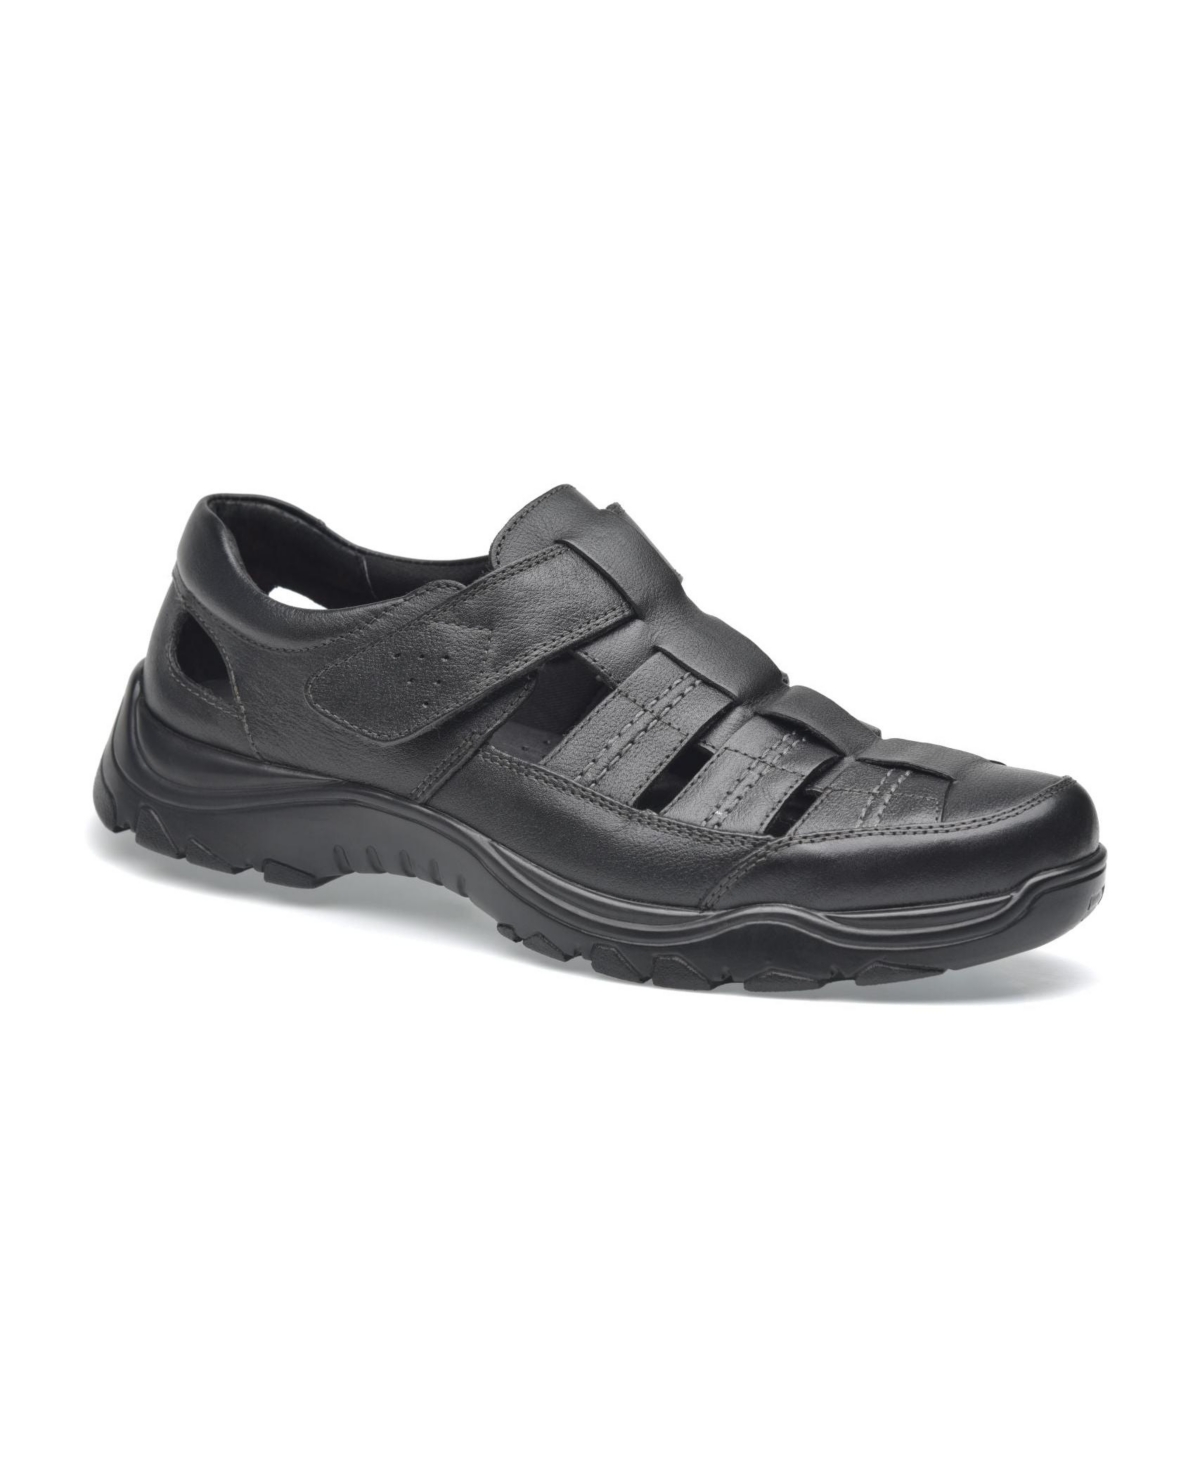 Men's Premium Comfort Leather Closed Toe Sandals John - Black